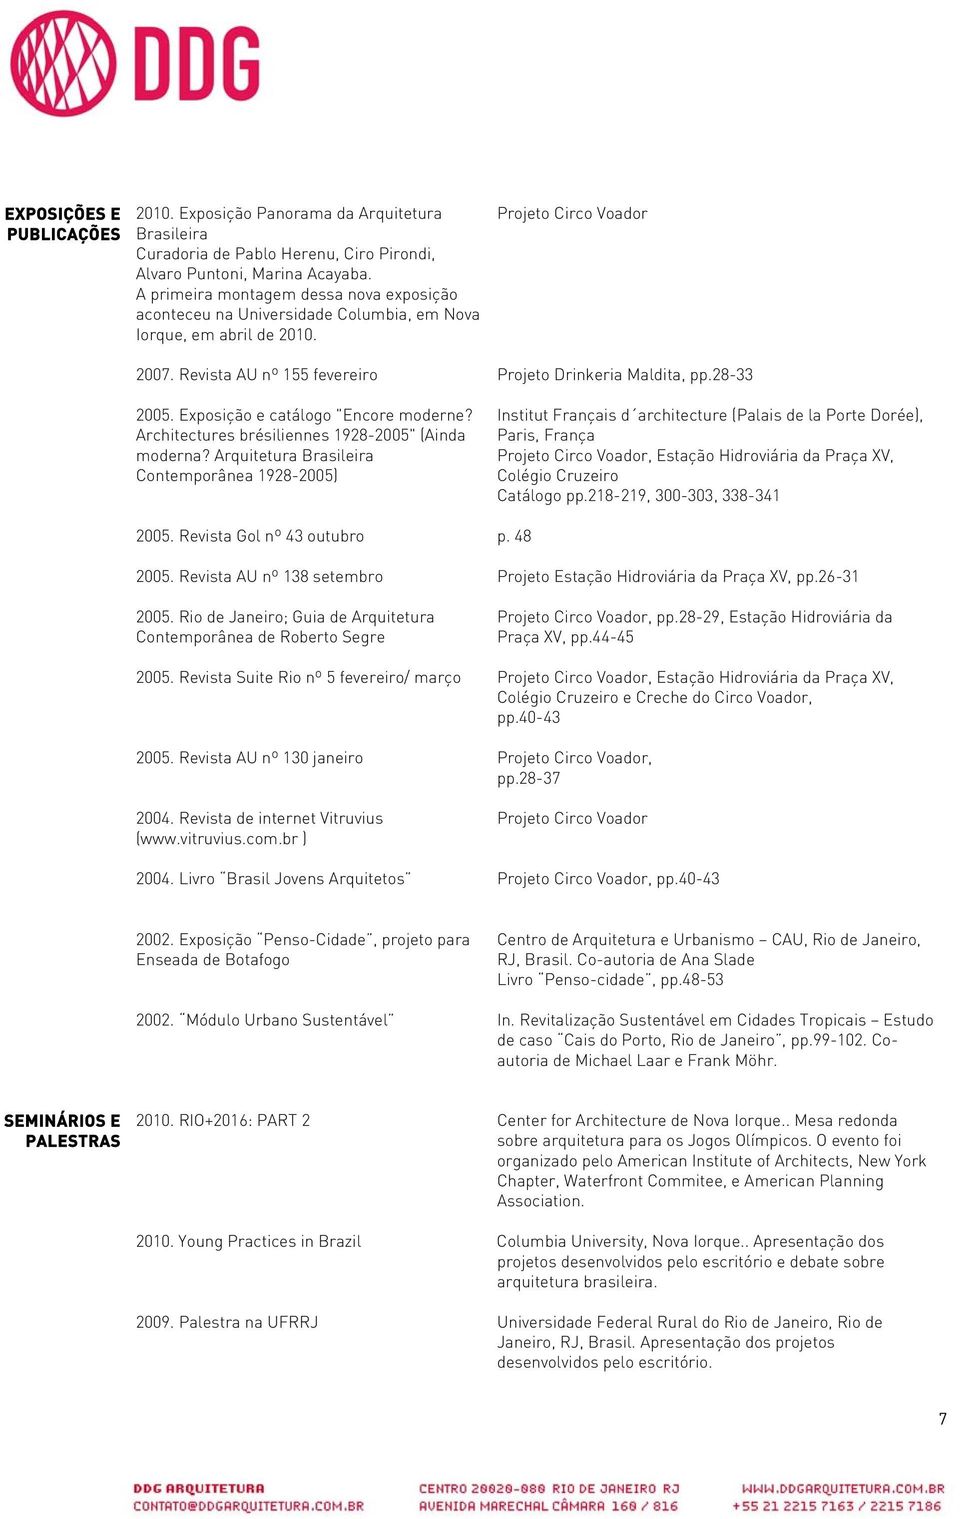 28-33 2005. Exposição e catálogo "Encore moderne? Architectures brésiliennes 1928-2005" (Ainda moderna?